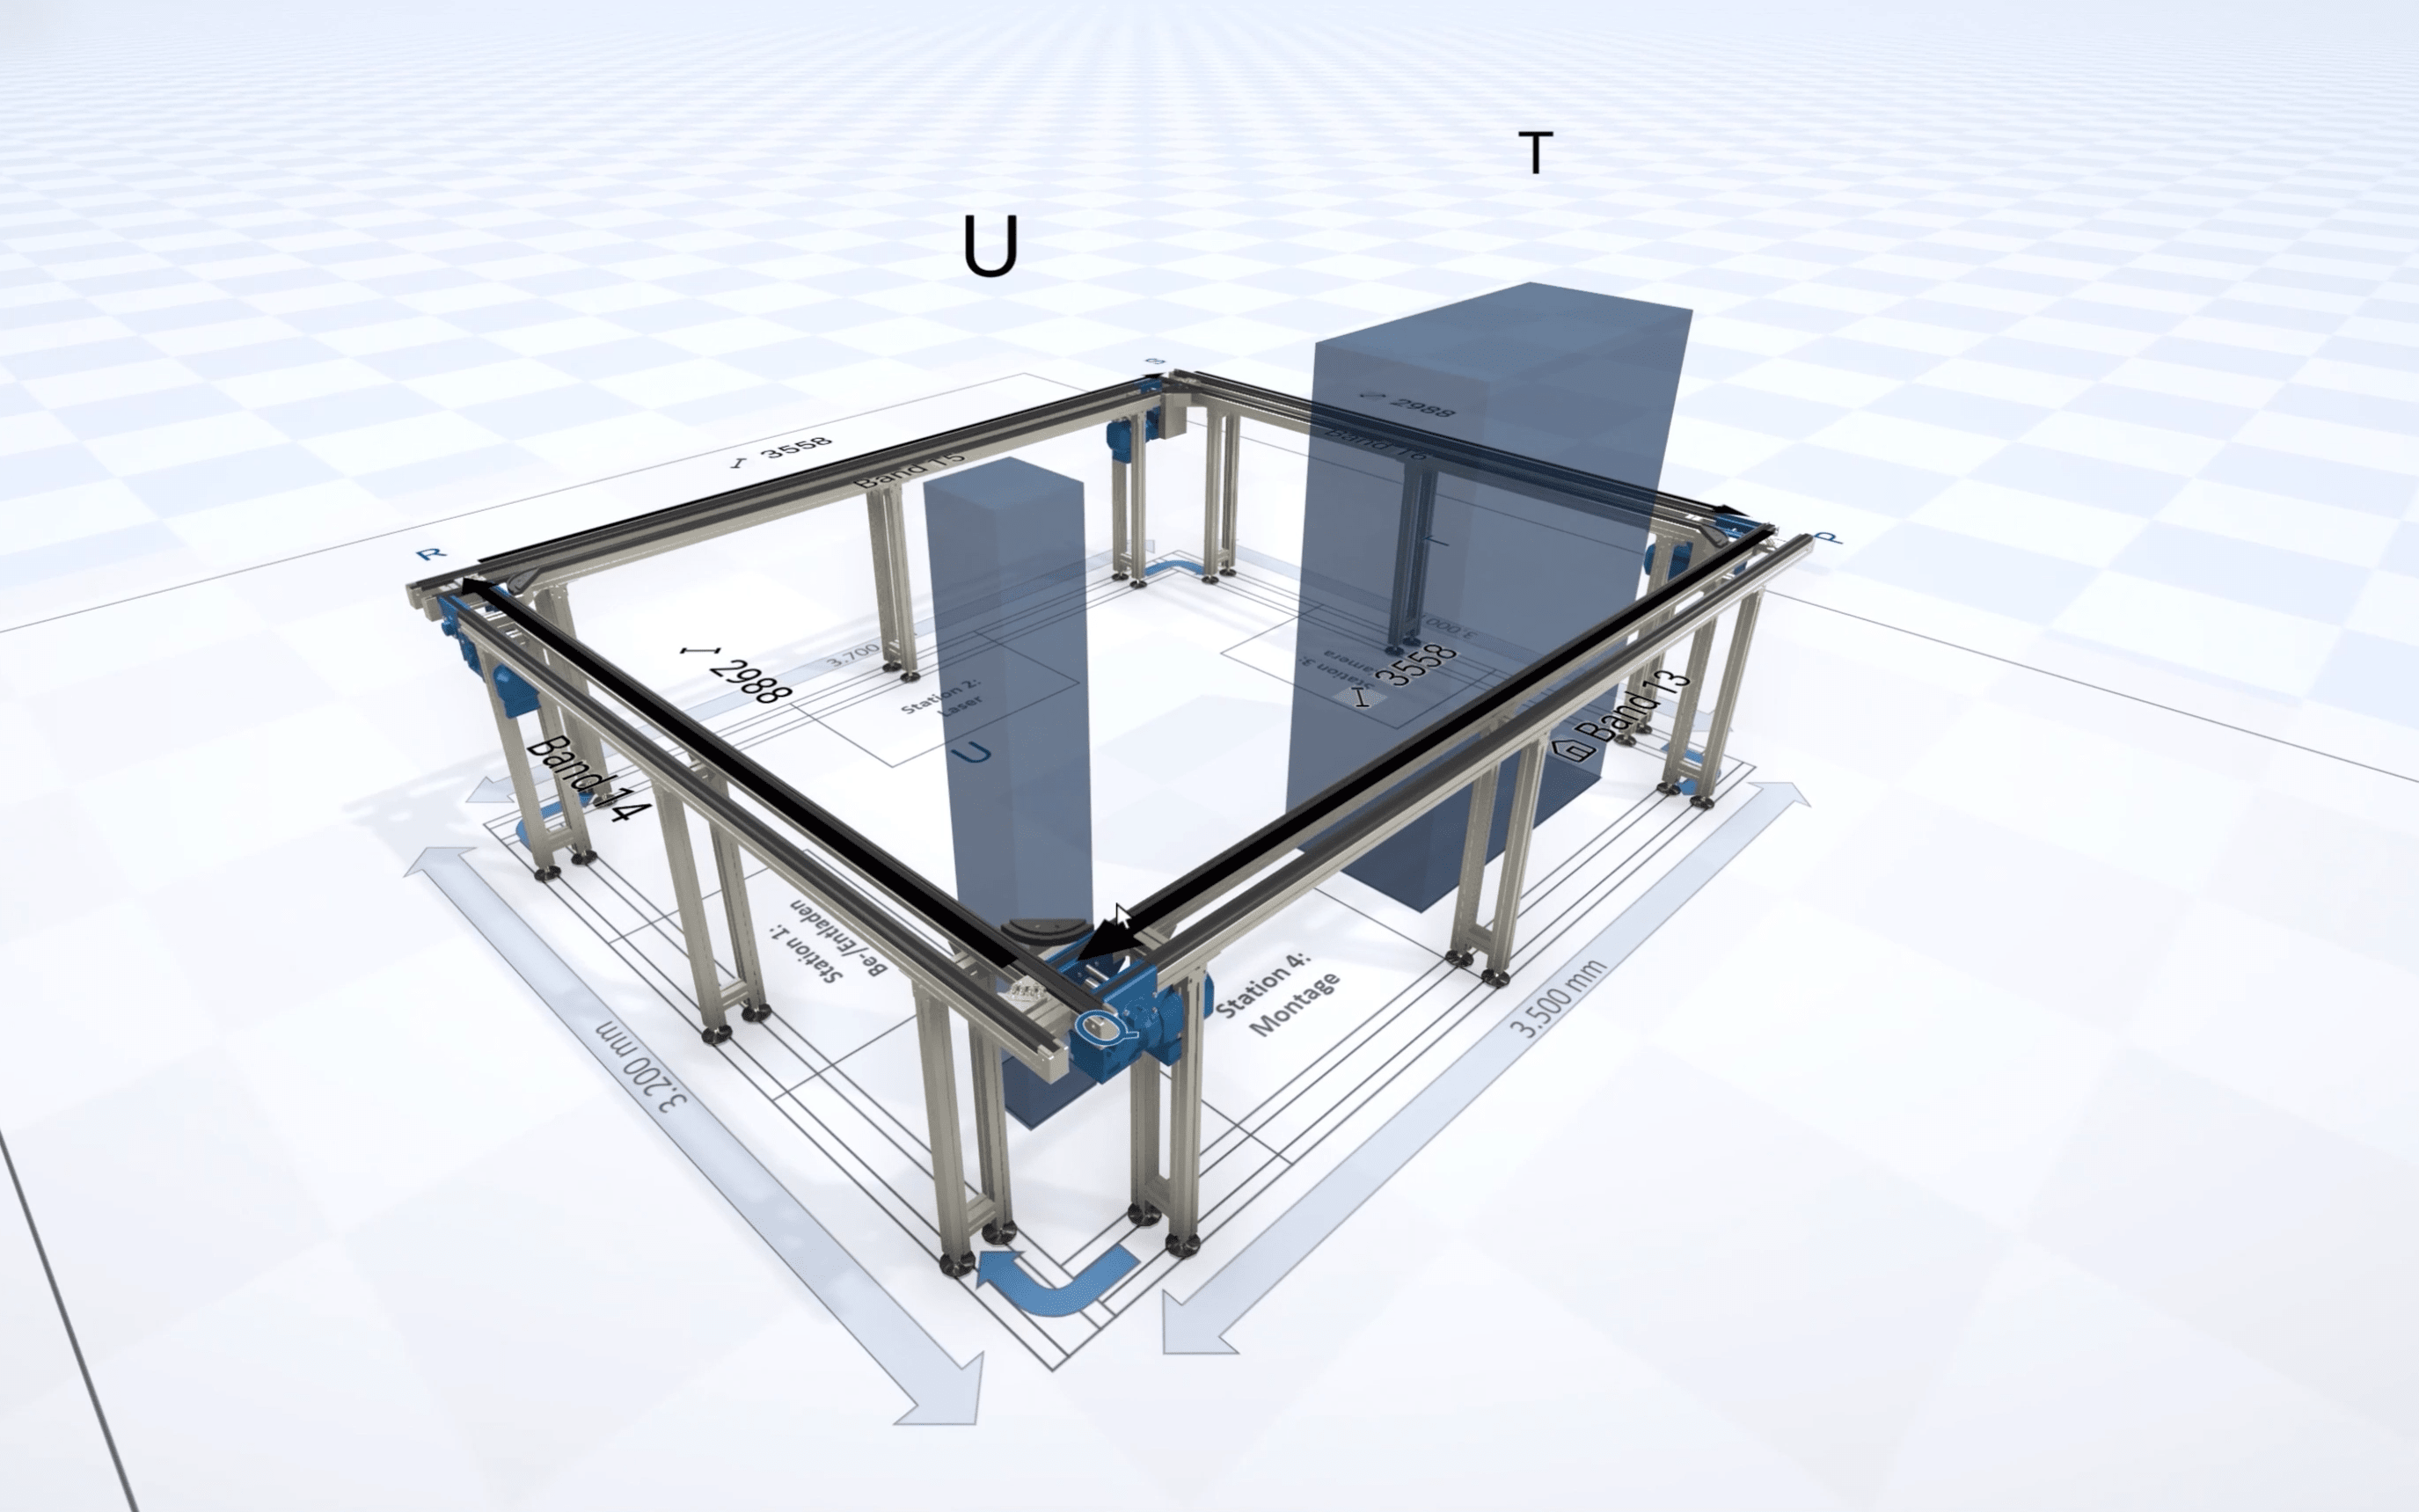 3D-CAD-Modell der konfigurieren Transferanlage in Schnaithmann EasyGo